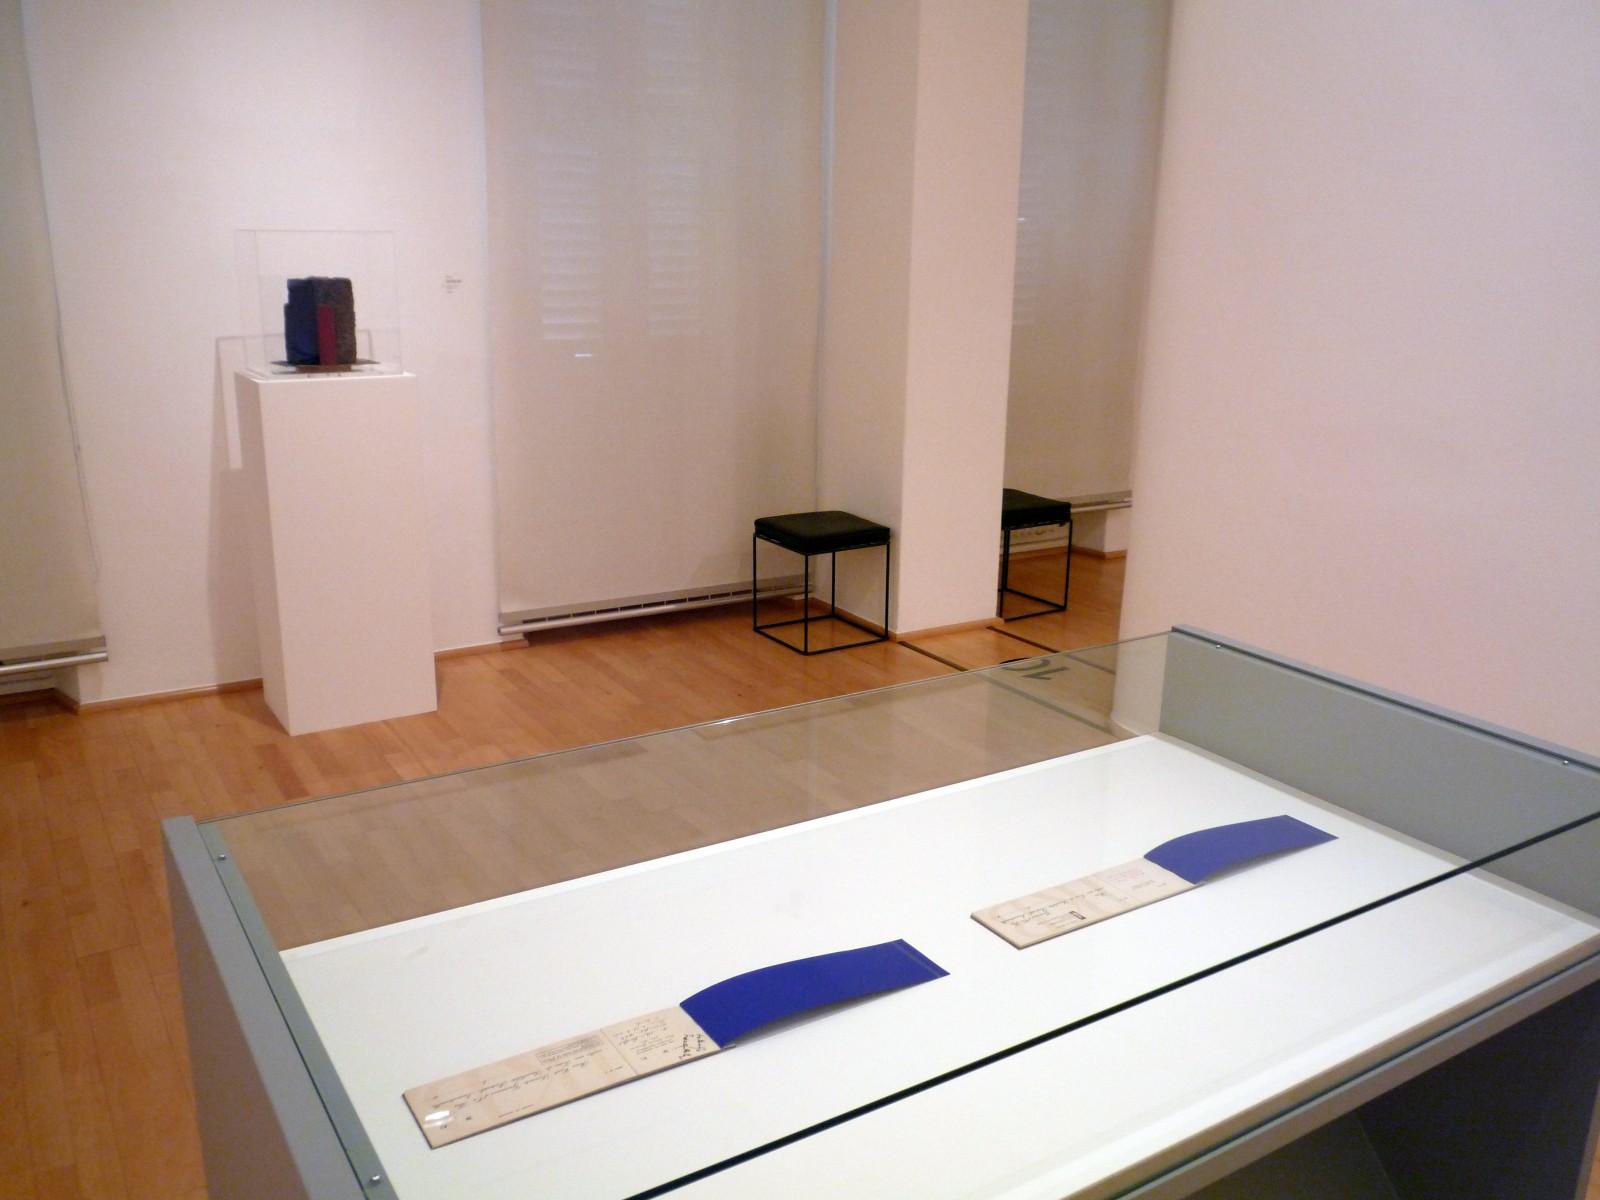 Vue de l'exposition "Yves Klein & Rotraut", Museo Cantonale d'Arte e il Museo d'Arte della città di Lugano, 2009